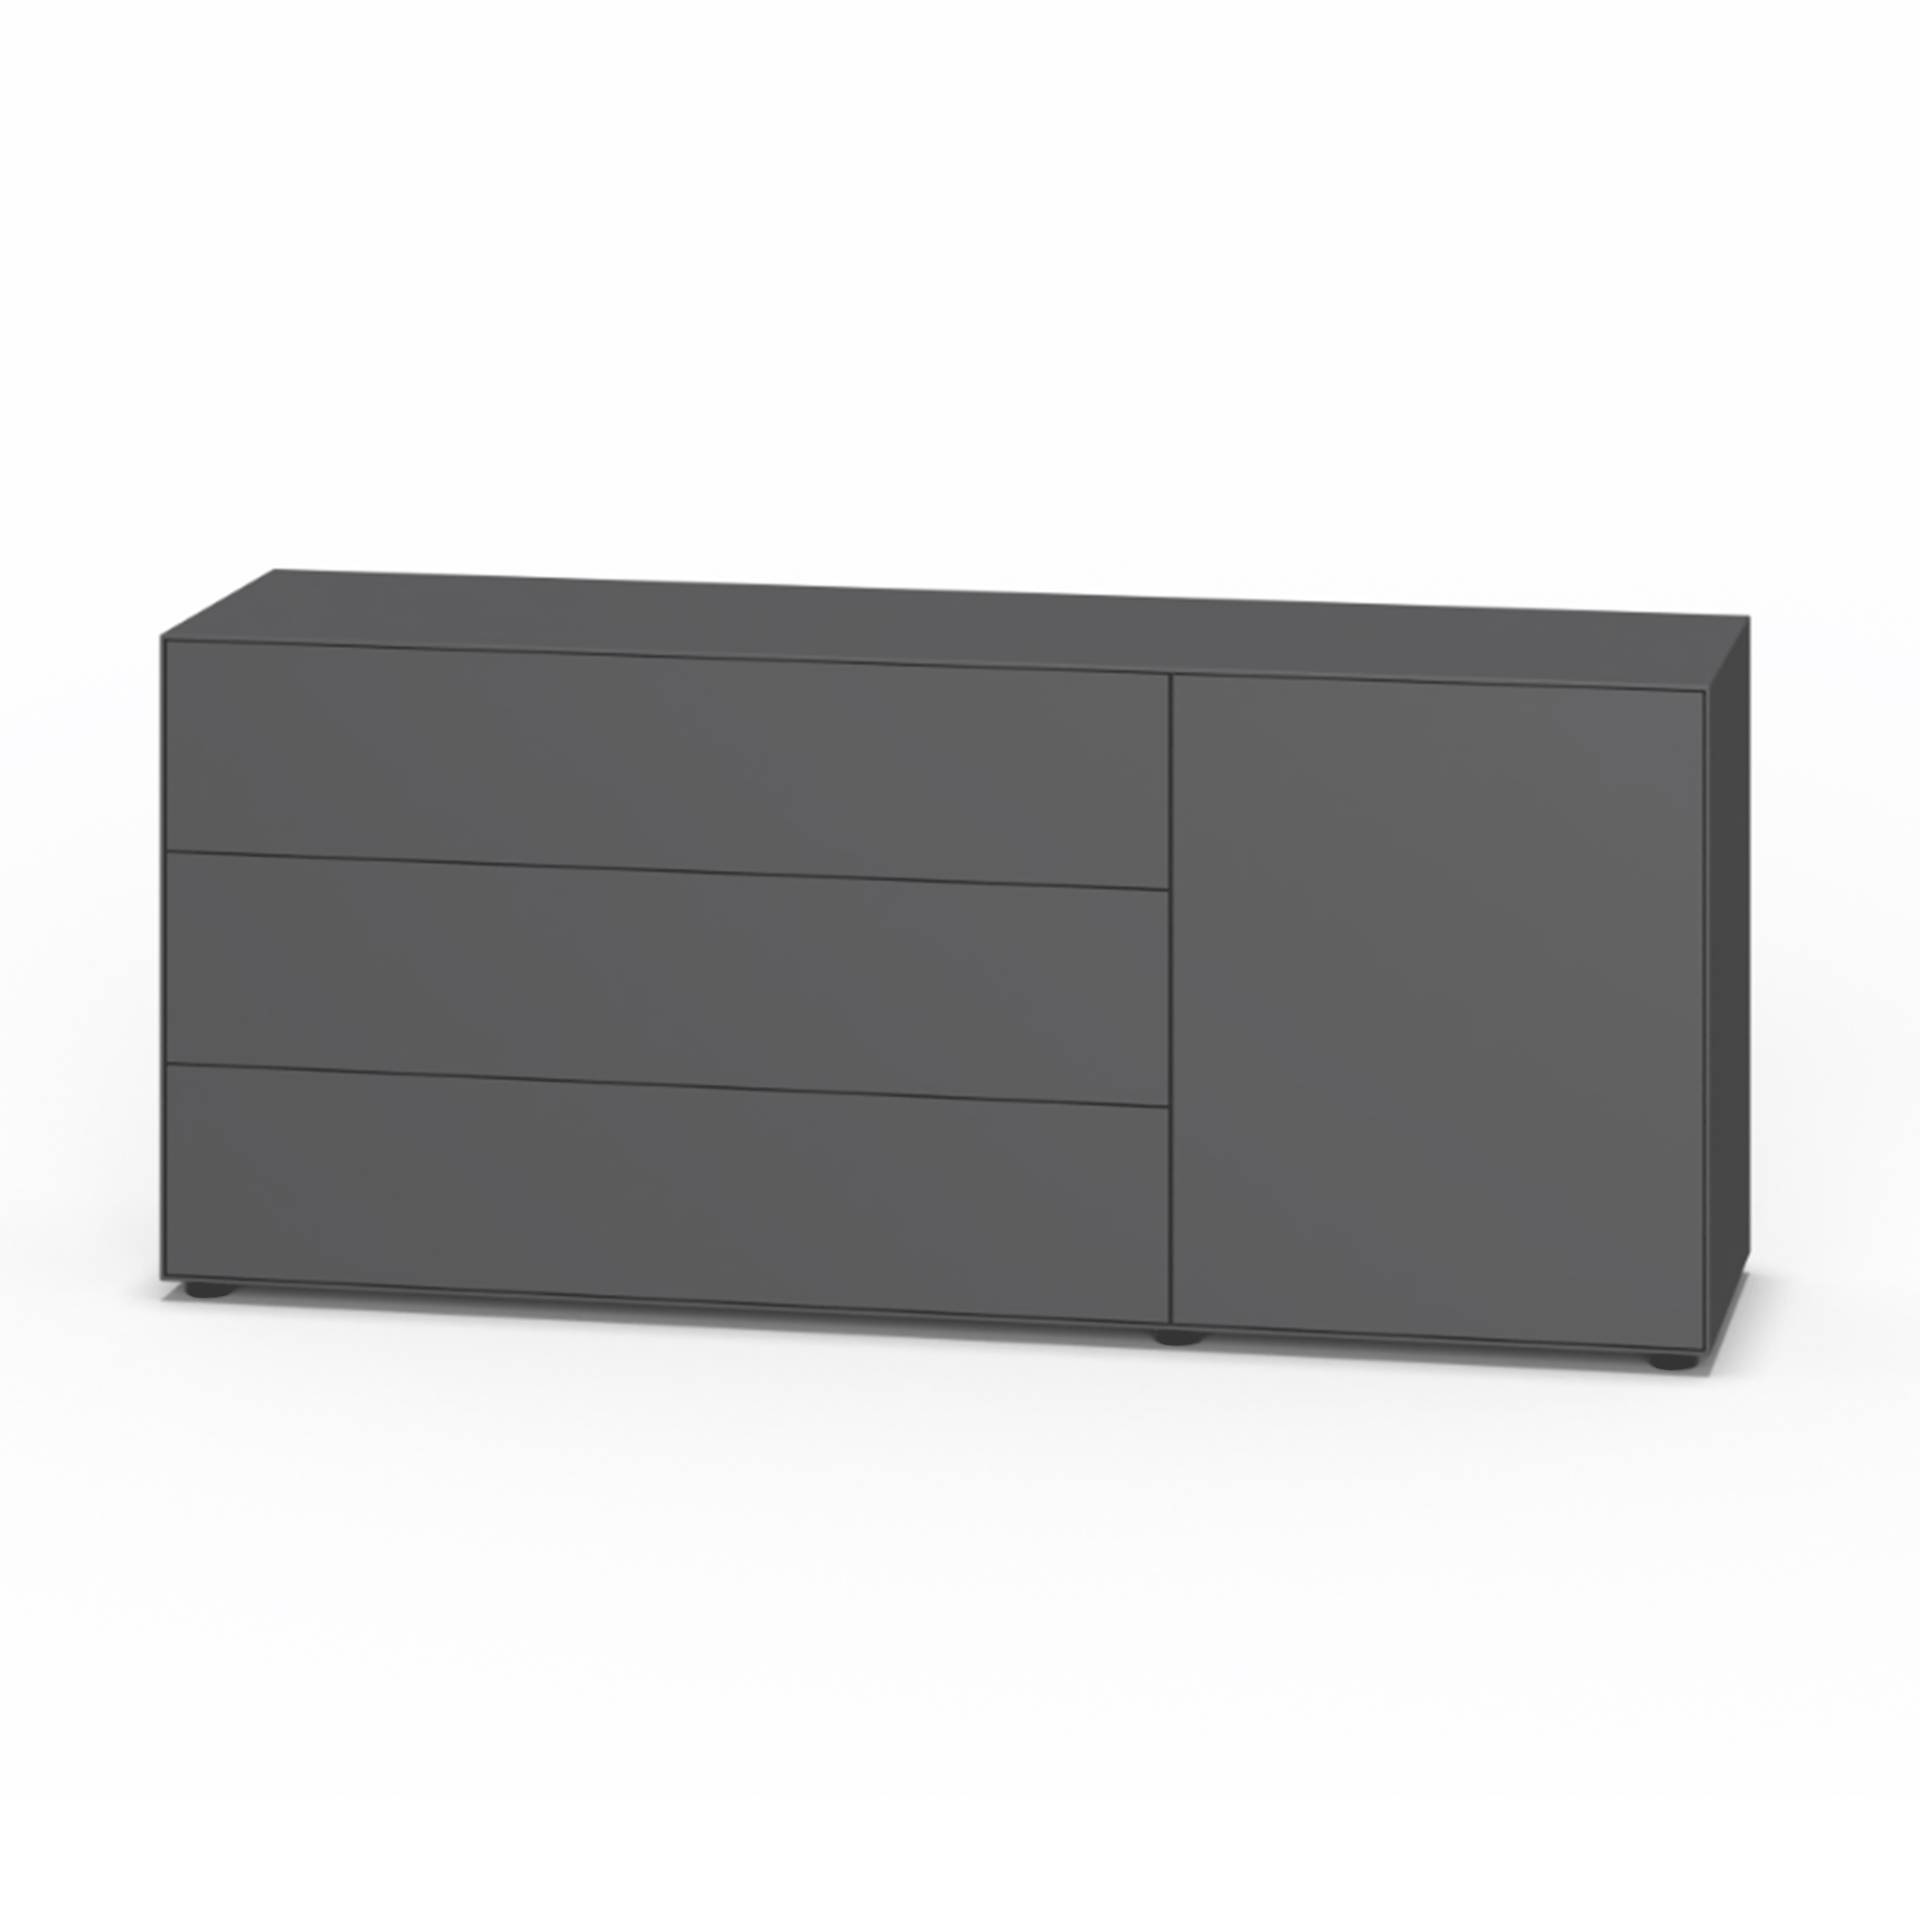 Piure - Nex Pur Box Sideboard mit Tür 180x75x48cm - graphit/MDF matt lackiert/BxHxT 180x75x48cm/mit Gleitfüße von Piure